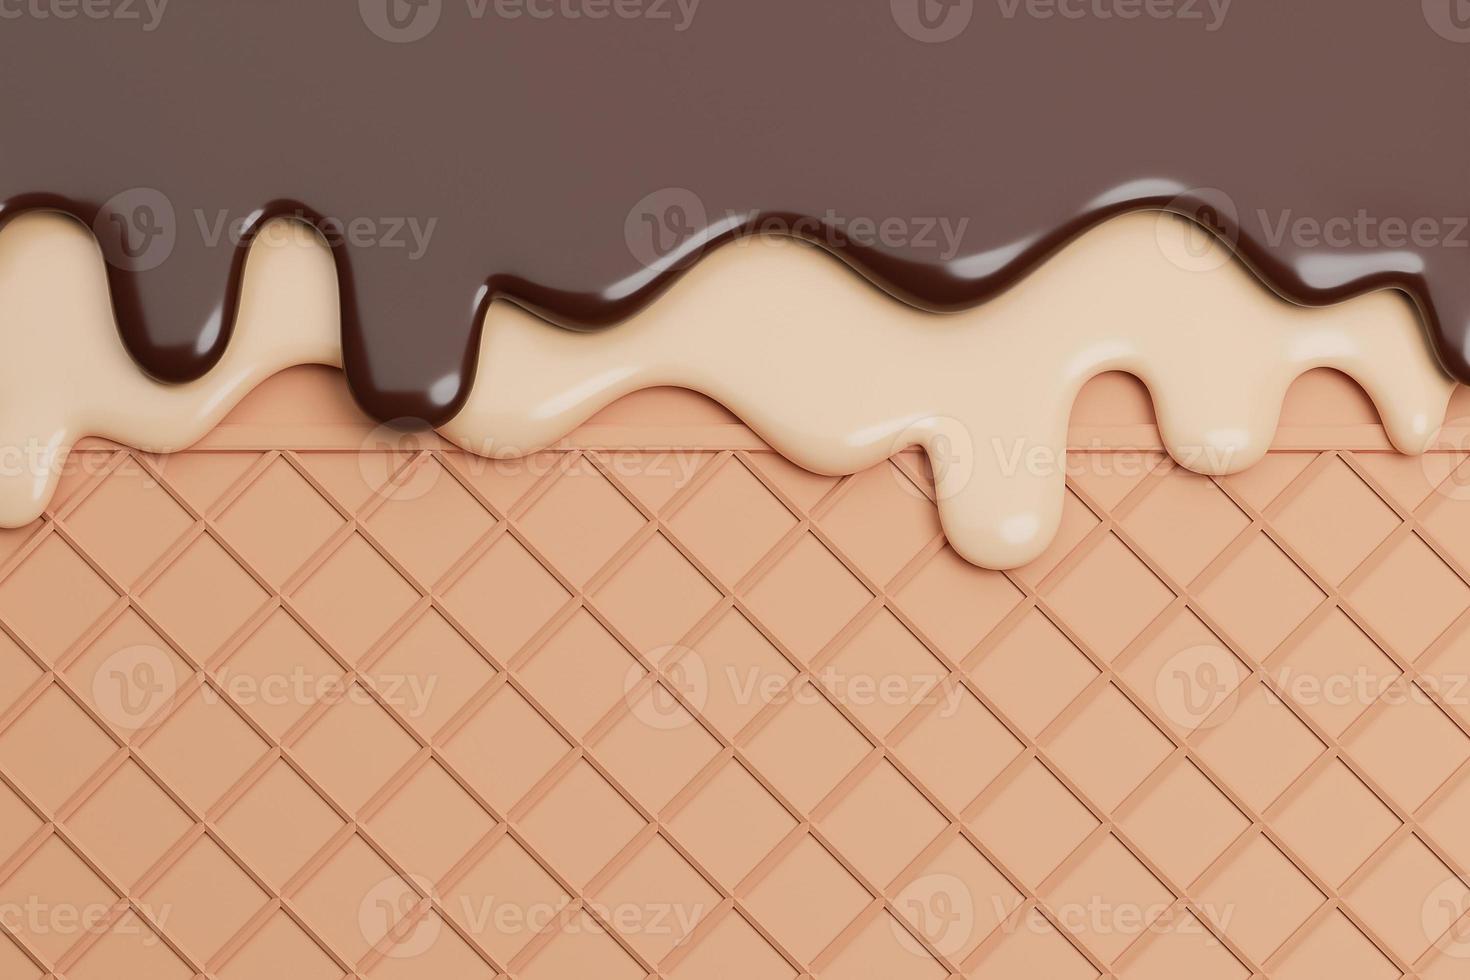 sorvete de chocolate e baunilha derretido no fundo da bolacha., modelo 3d e ilustração. foto